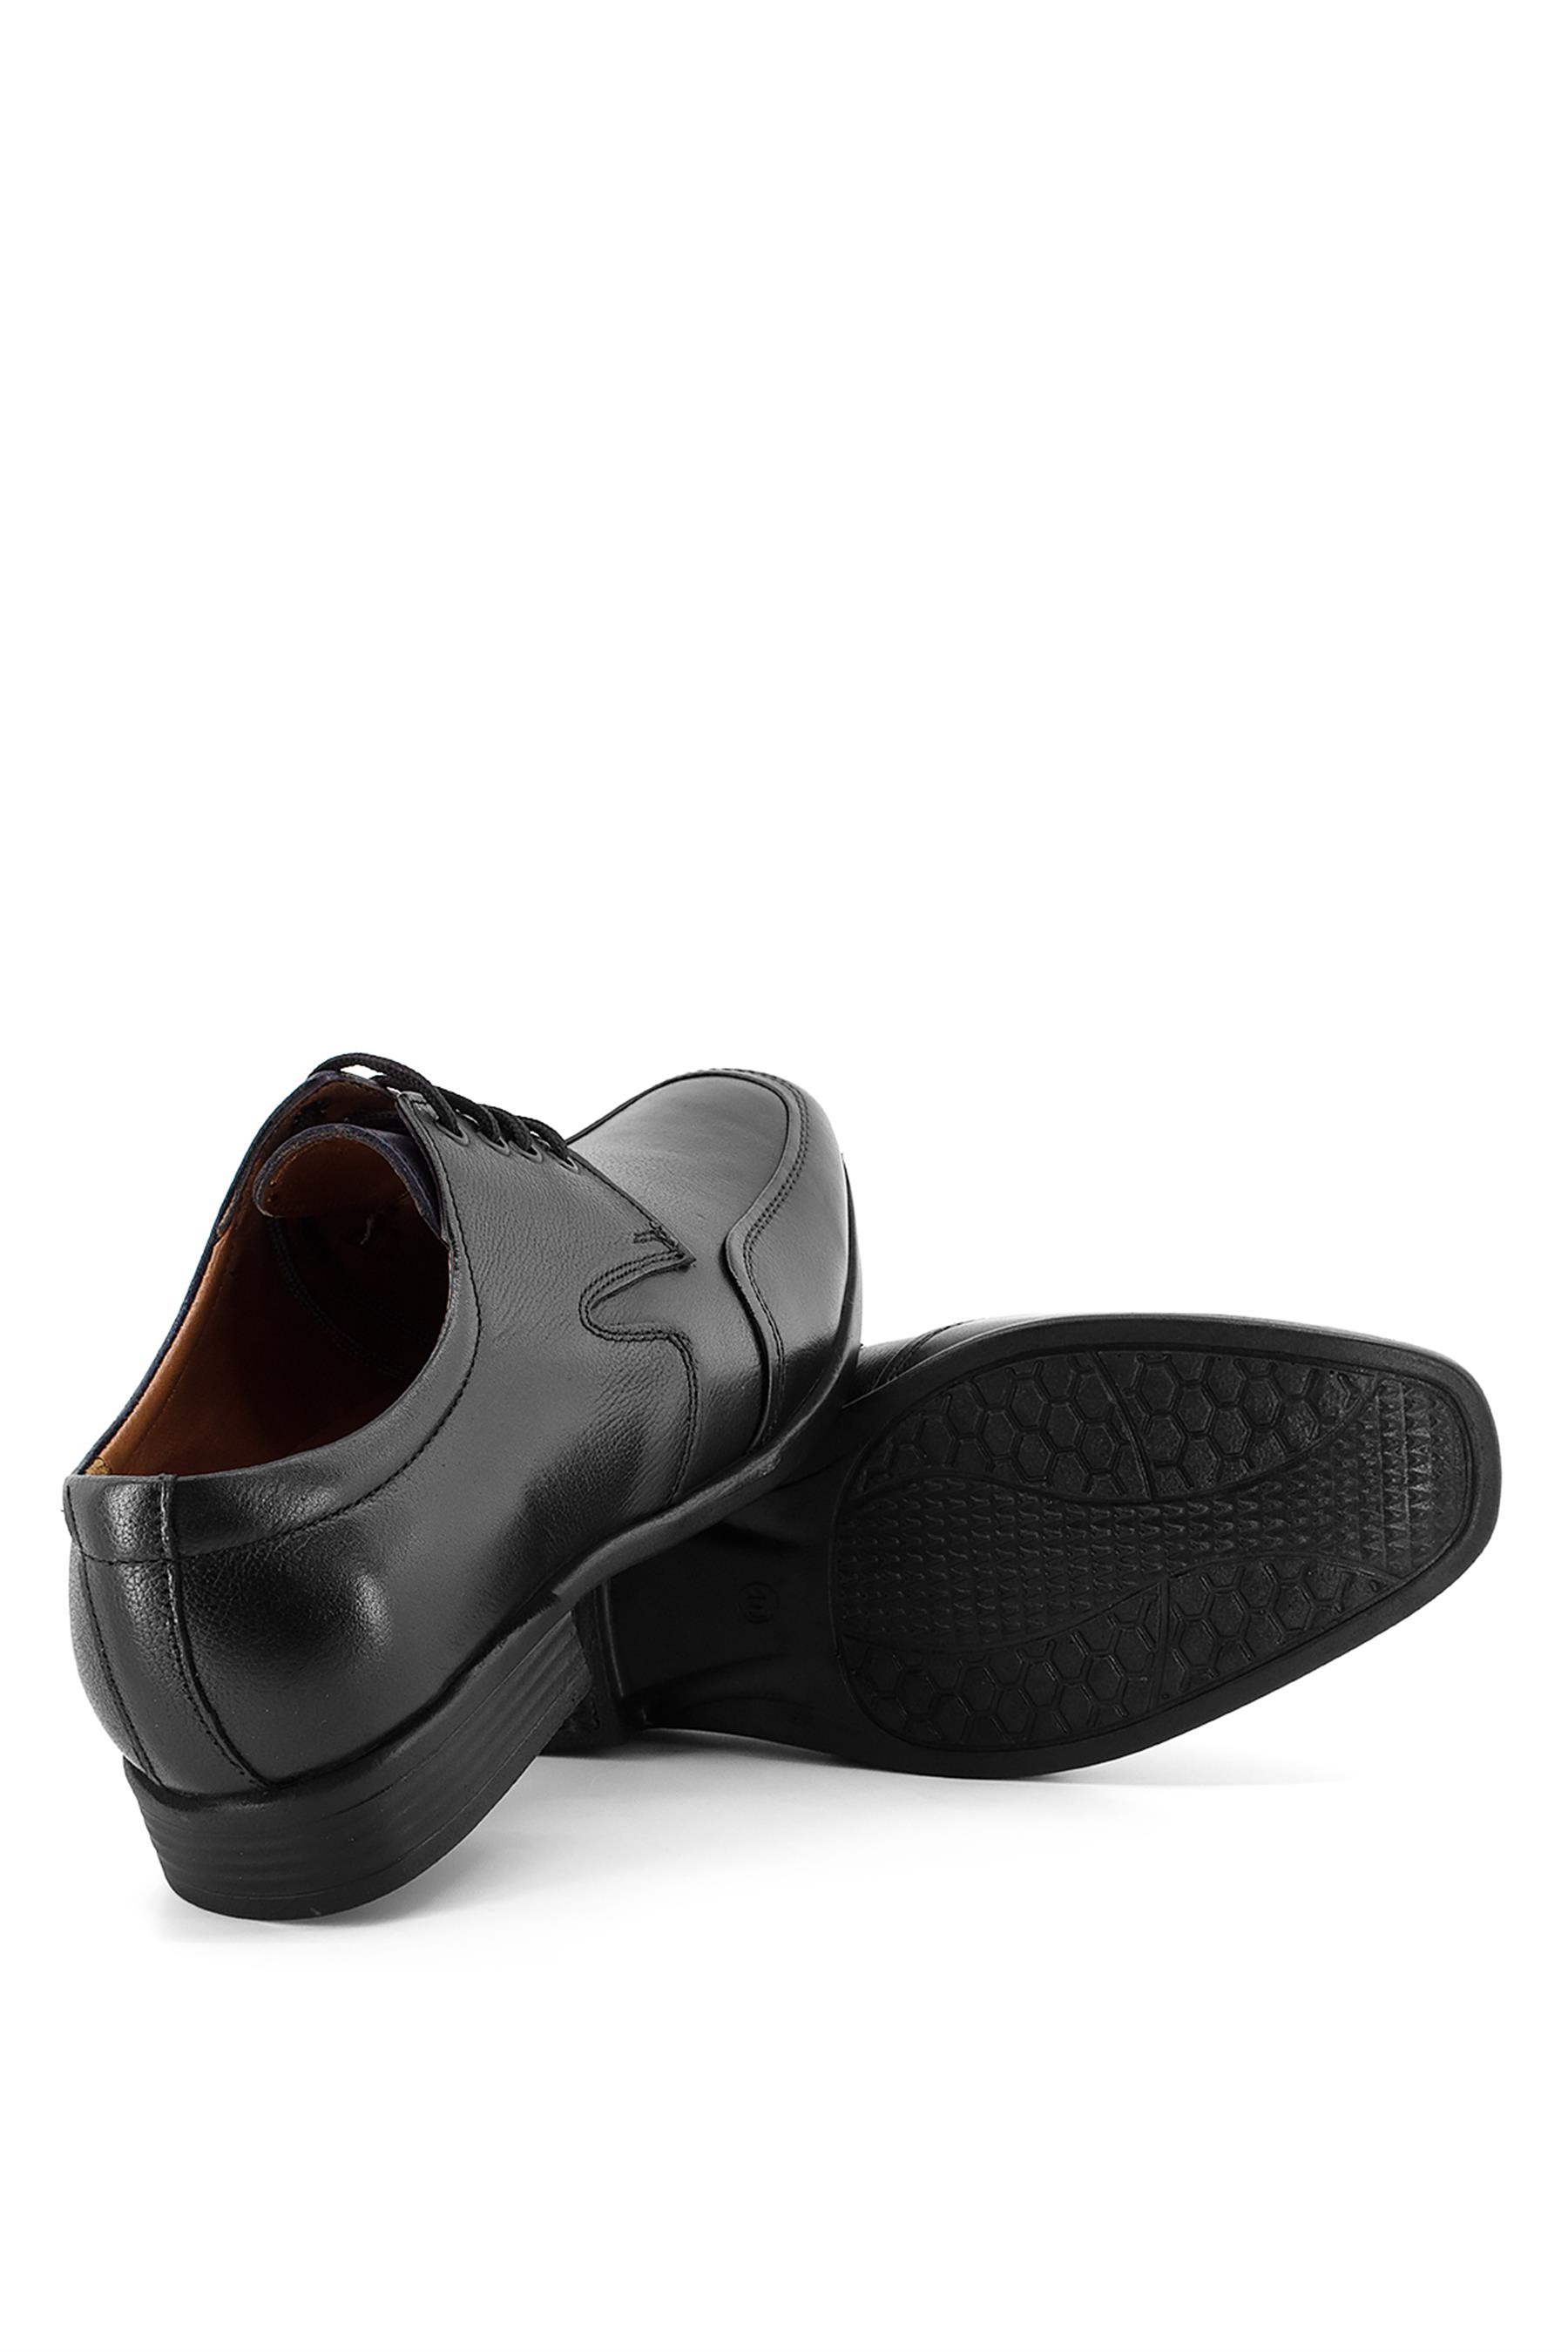 Bemsa 23Y716C Erkek Hakiki Deri Günlük Ayakkabı Siyah - Ayakkabı Fuarı Elit